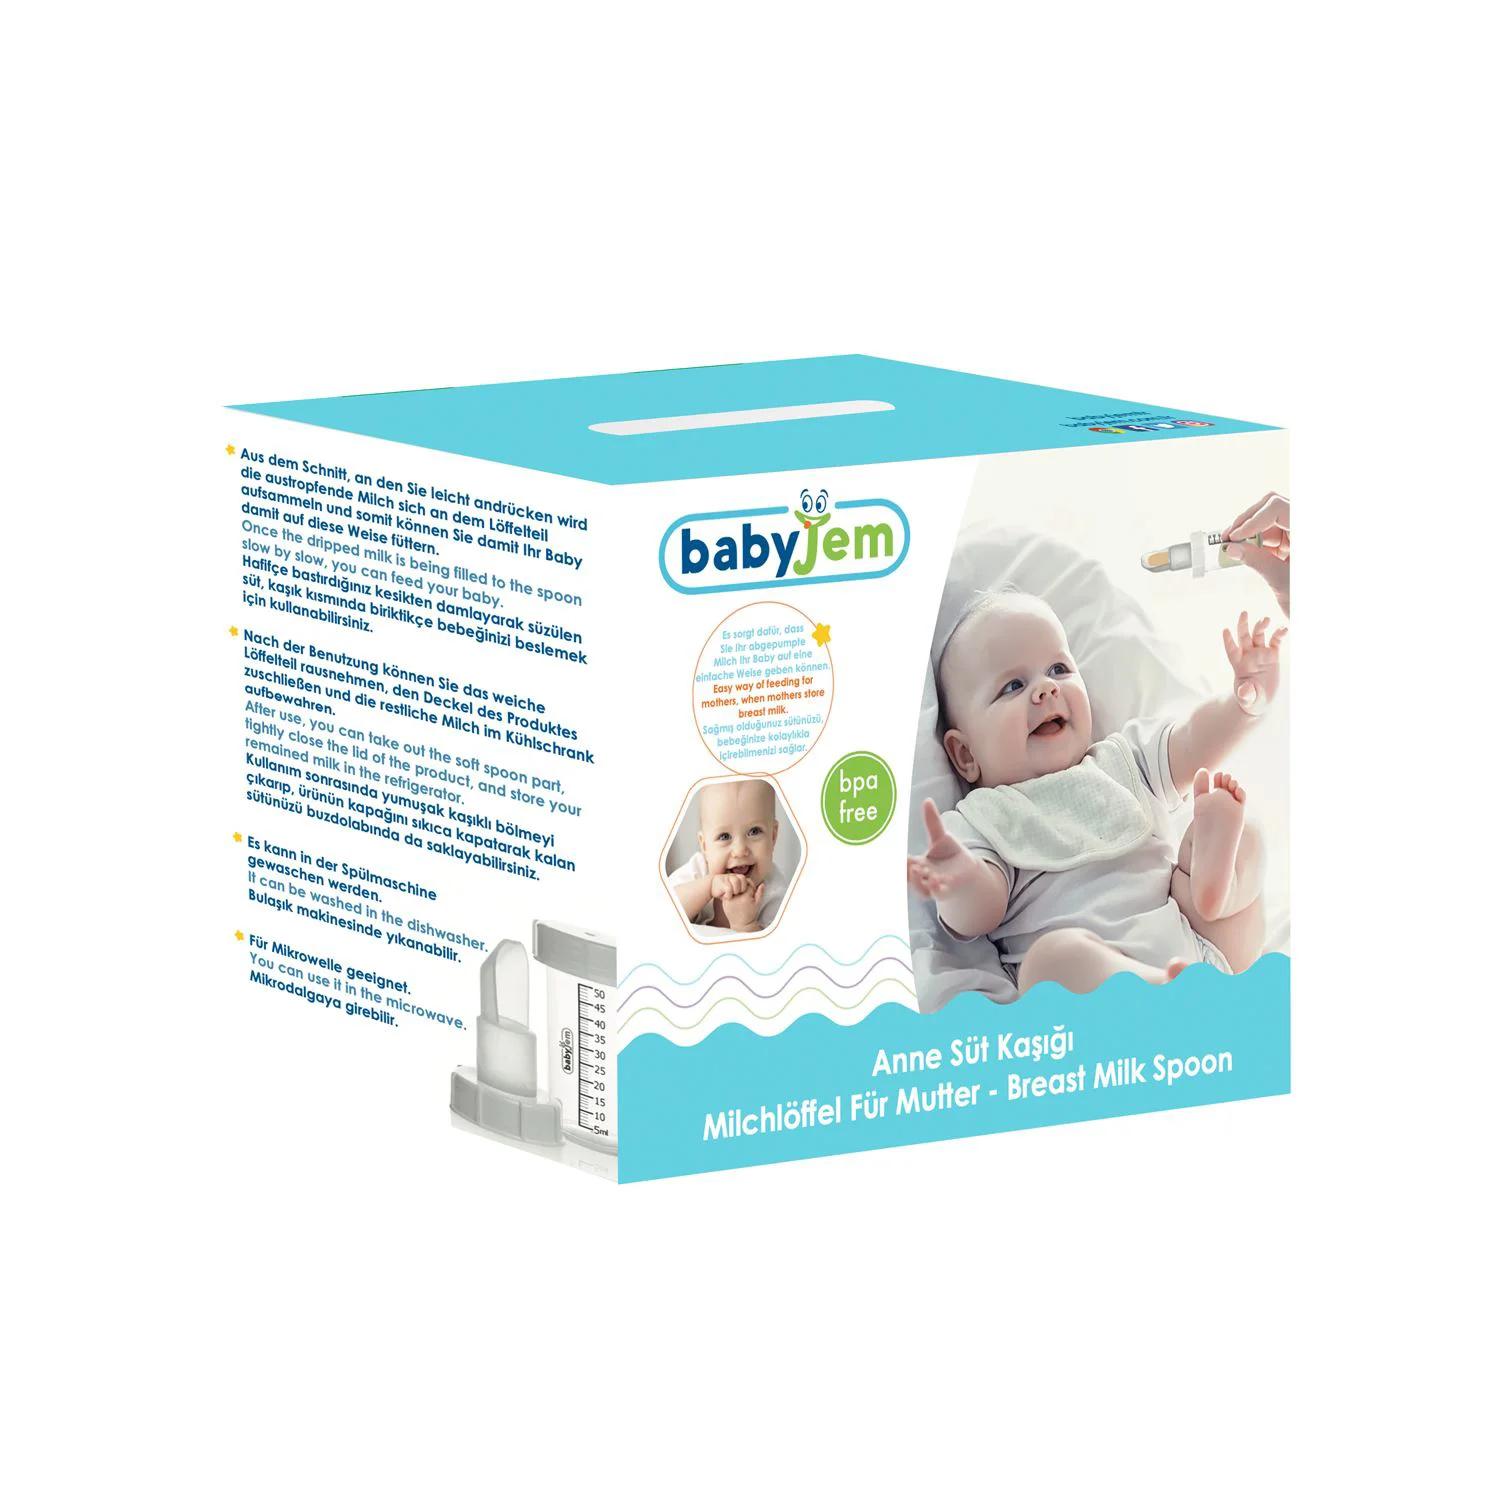 Dispozitiv cu gradatie pentru laptele matern sau medicamente BabyJem